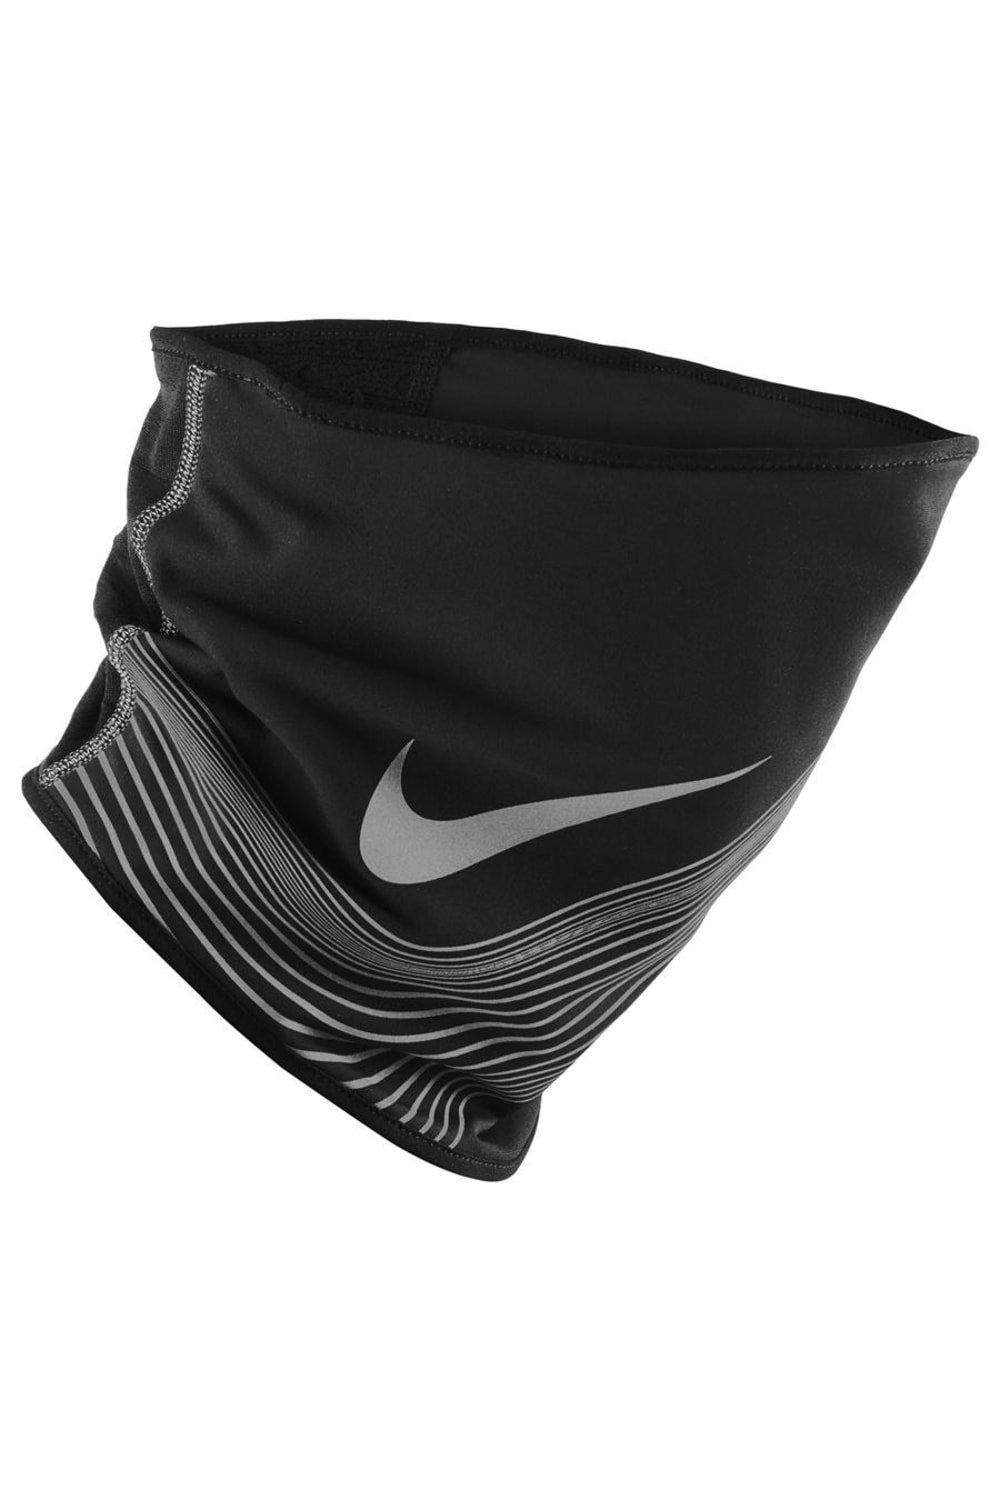 360 Therma-Fit Утеплитель для шеи Nike, черный fit